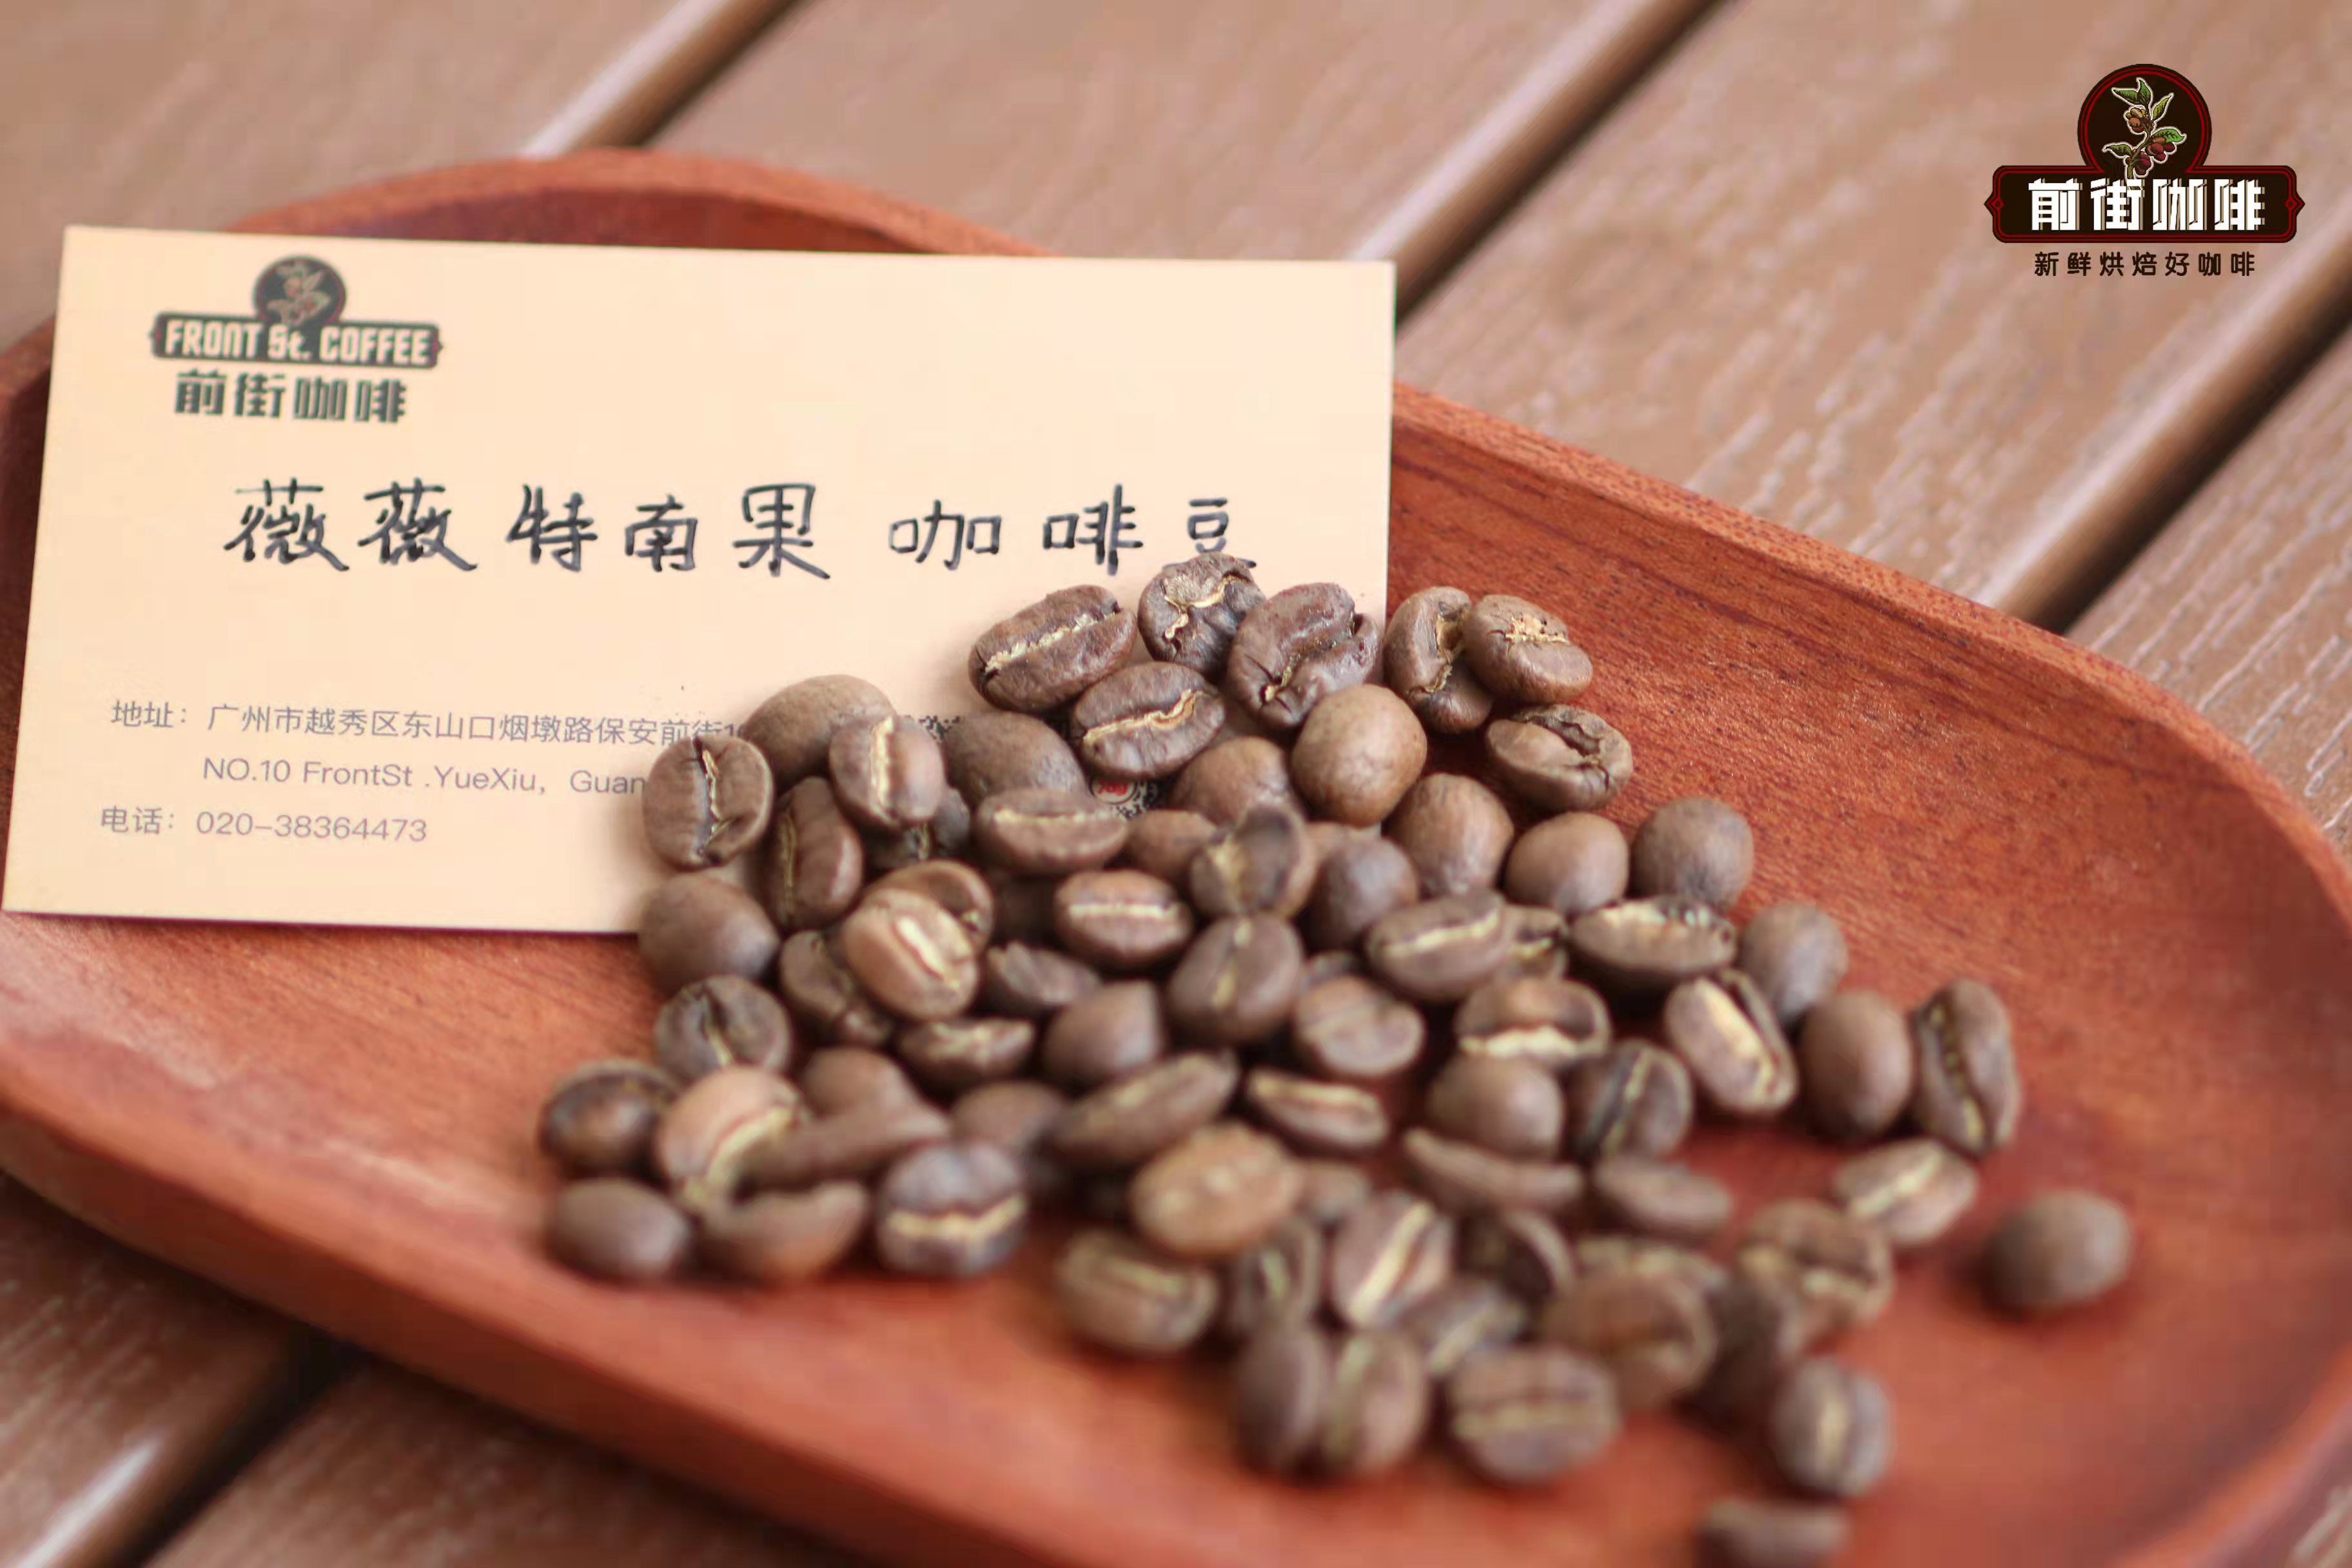 危地马拉咖啡豆的等级分级严格硬豆 (SHB) 和硬豆 (HB) 是什么意思